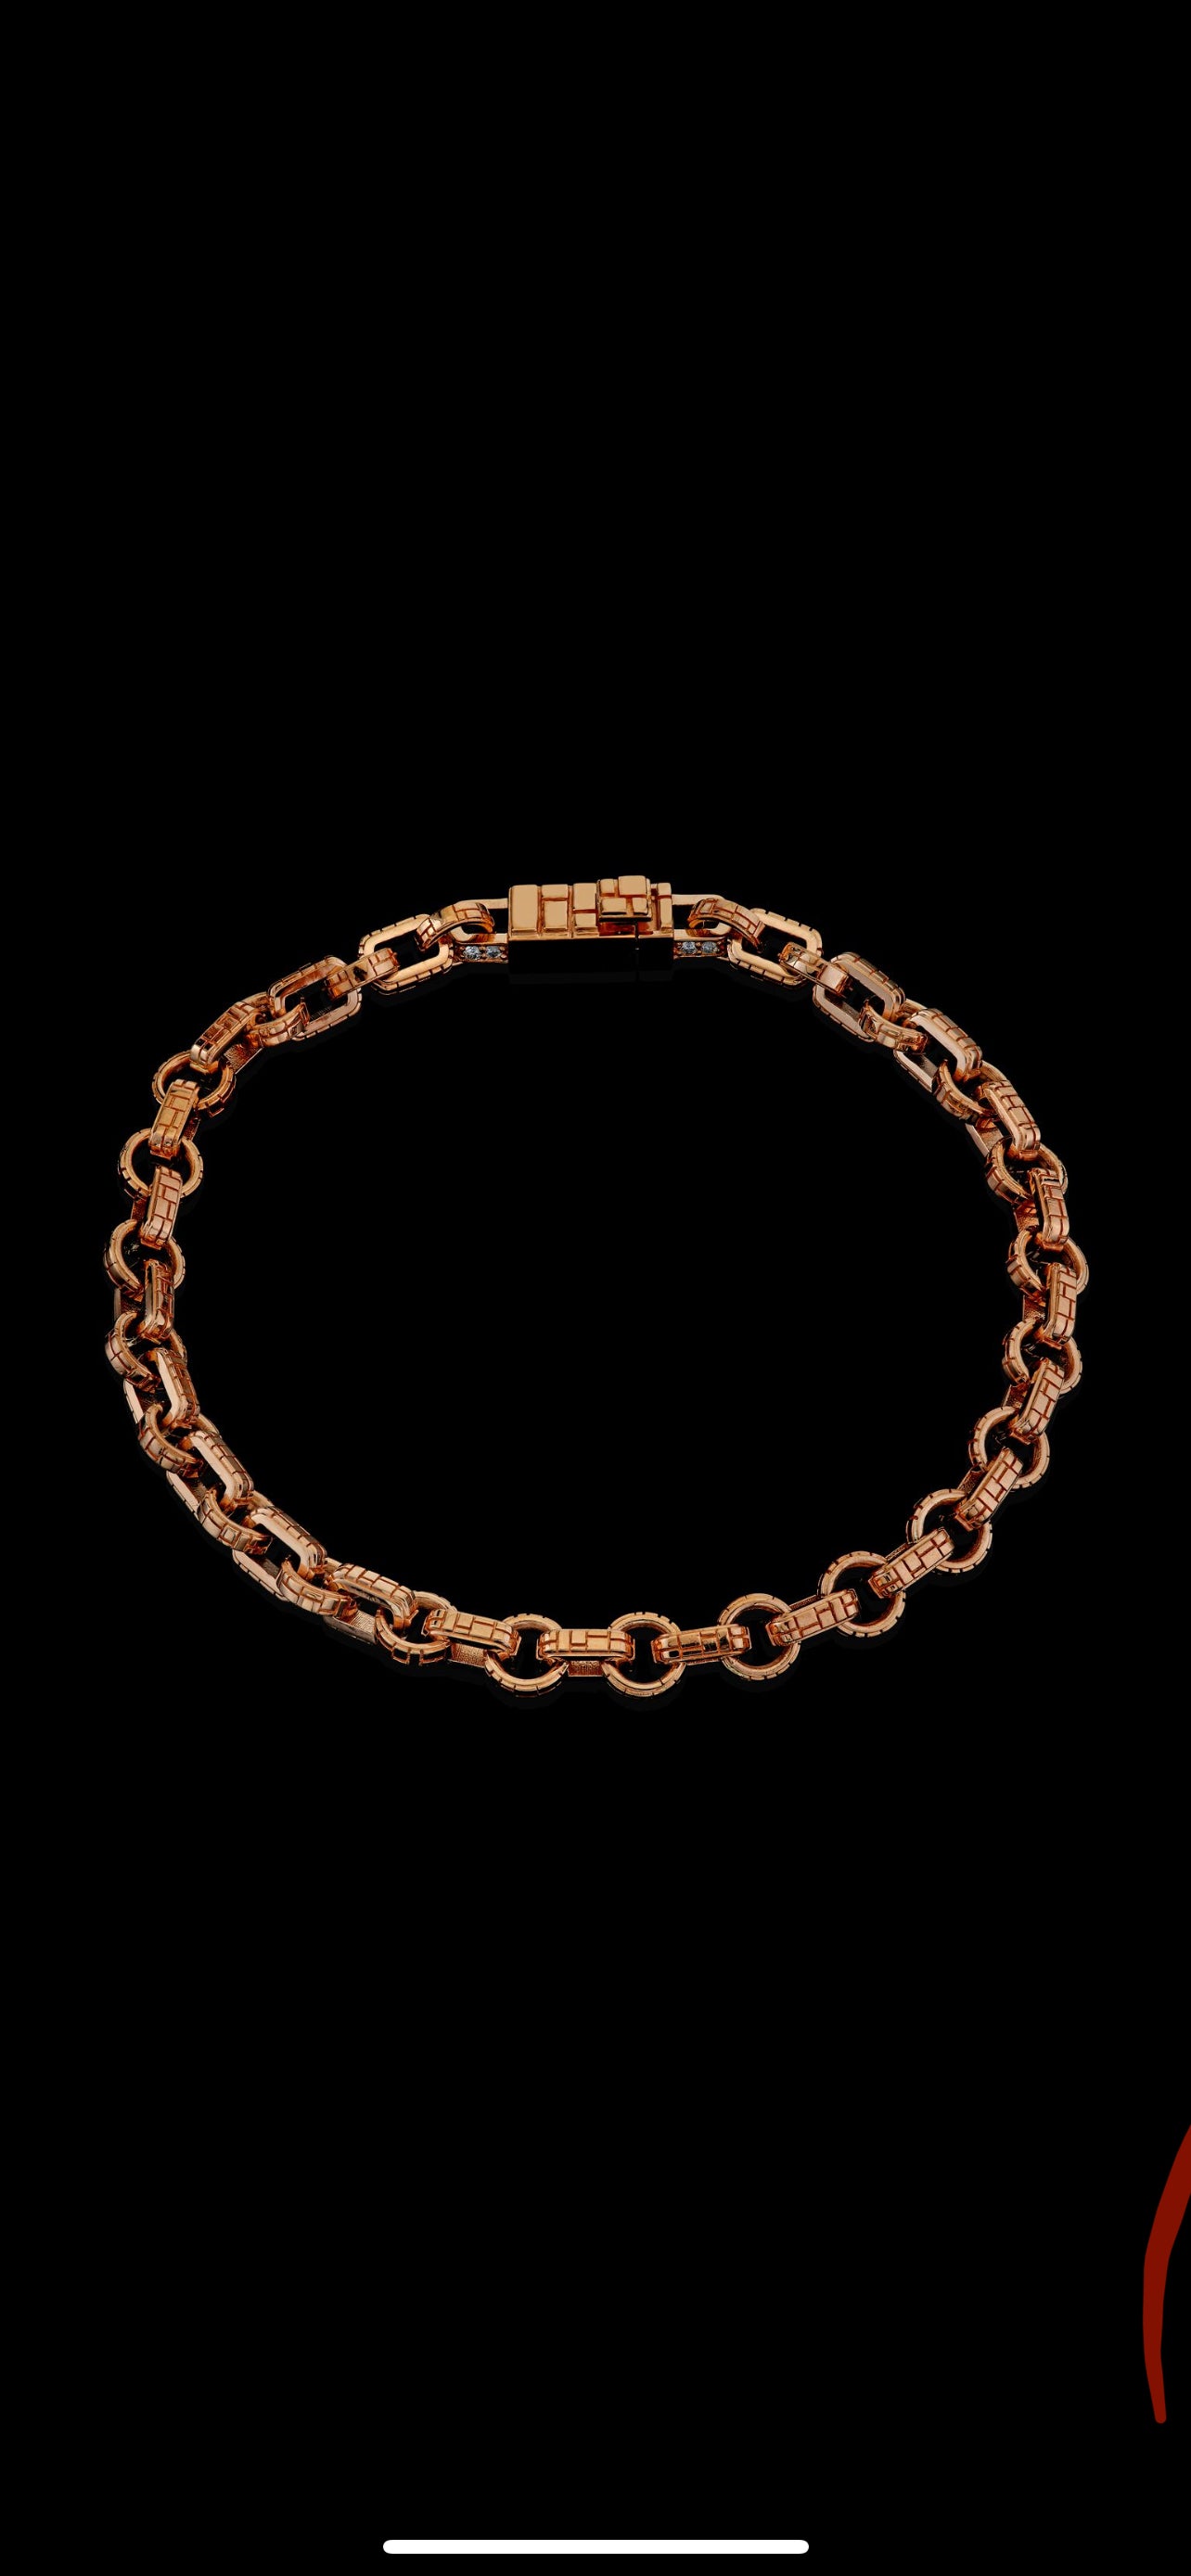 Signature Collection ‘Interlocked’ Link Bracelet in 18k Rose Gold